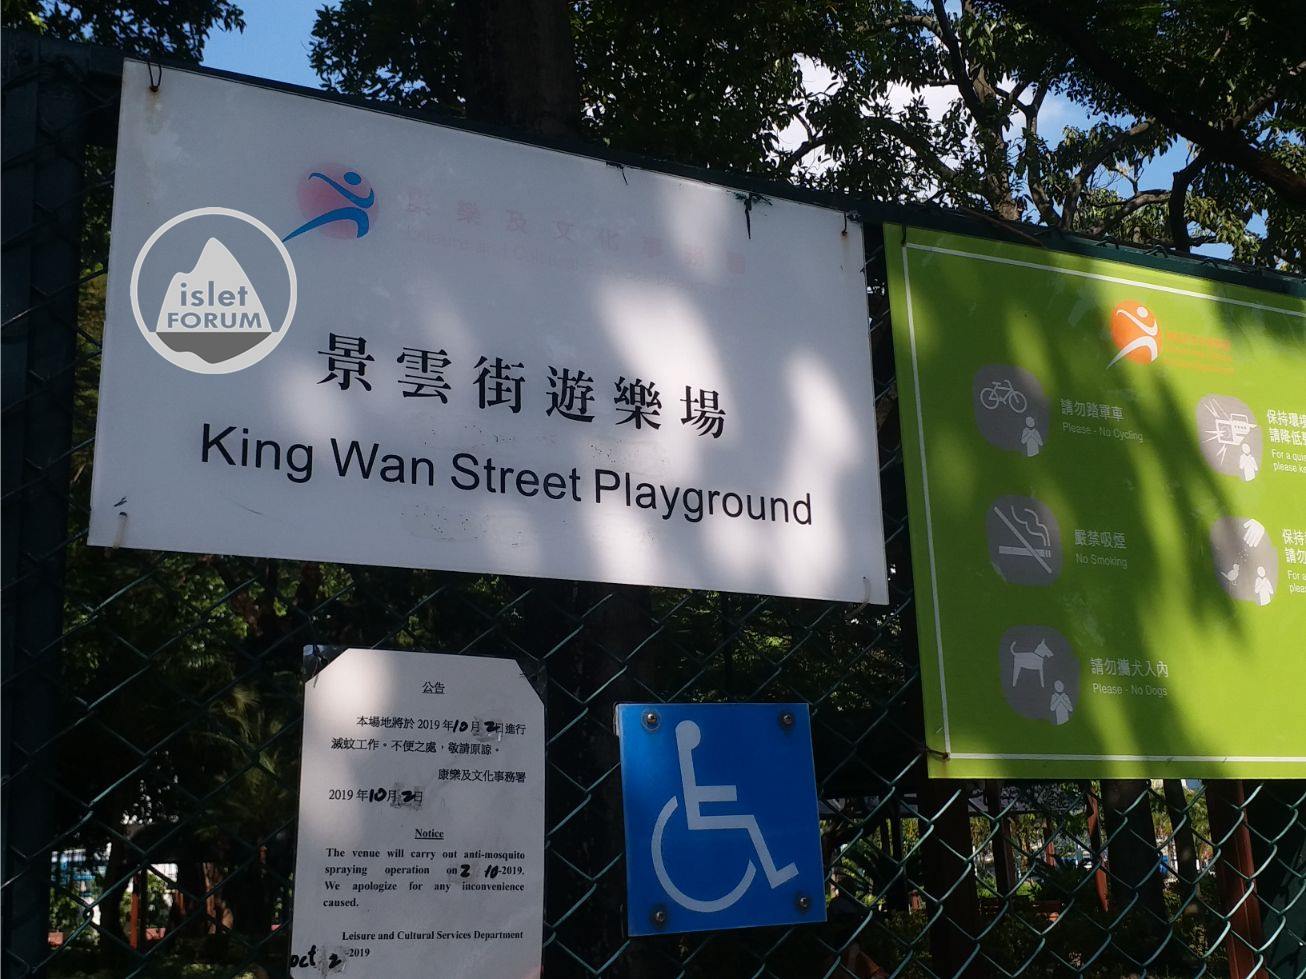 景雲街遊樂場king wan street playground (10).jpg